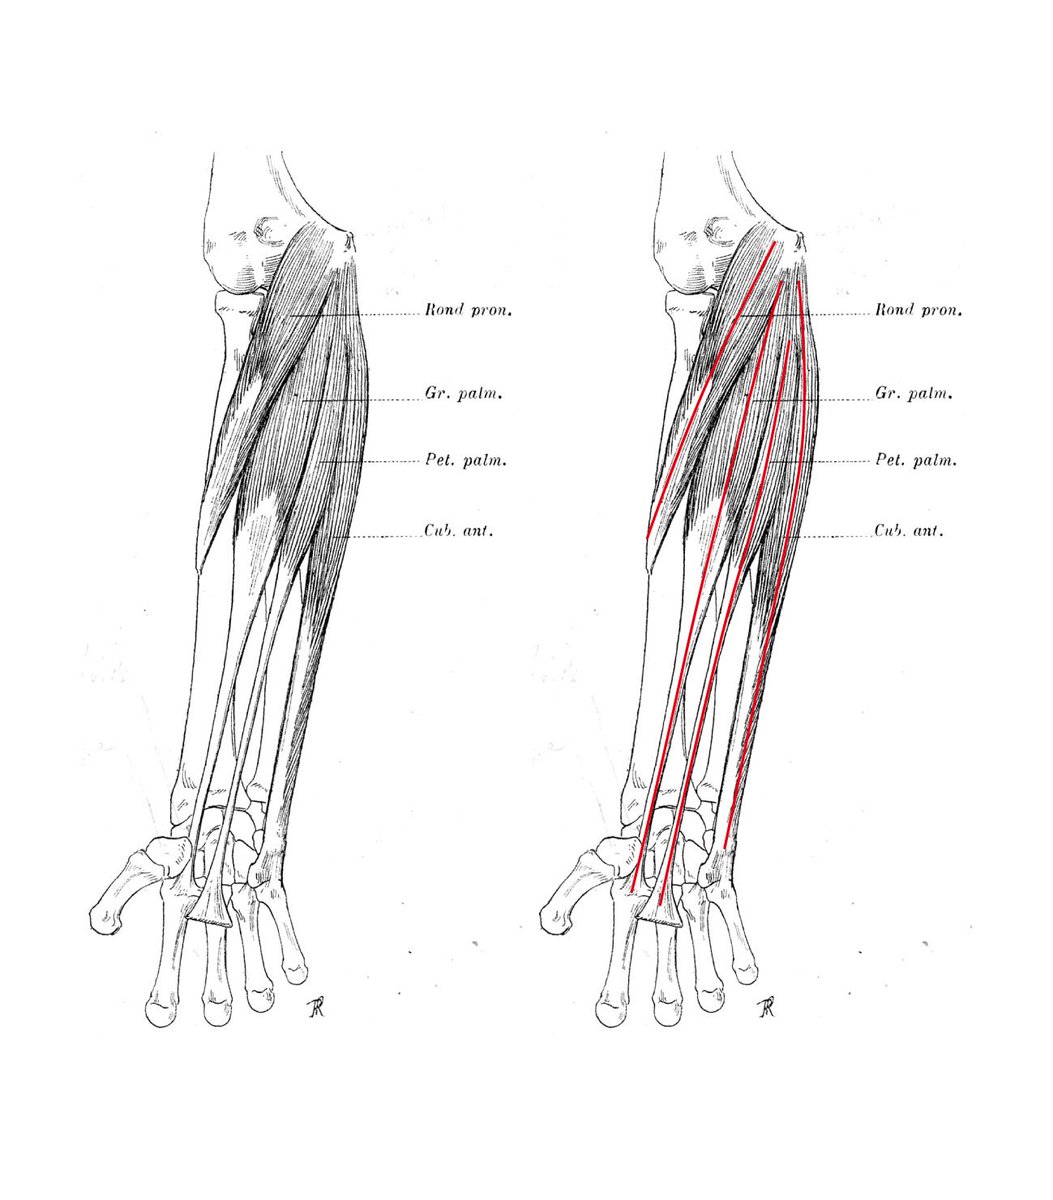 伊豆の美術解剖学者 على تويتر 前腕など筋が密集して理解しにくい場合は 筋の中央あたりを通過する仮想軸を描くと整理できる 描かれた仮想軸は 筋の主な収縮方向を示す この方法は 古くは レオナルド ダ ヴィンチが採用している